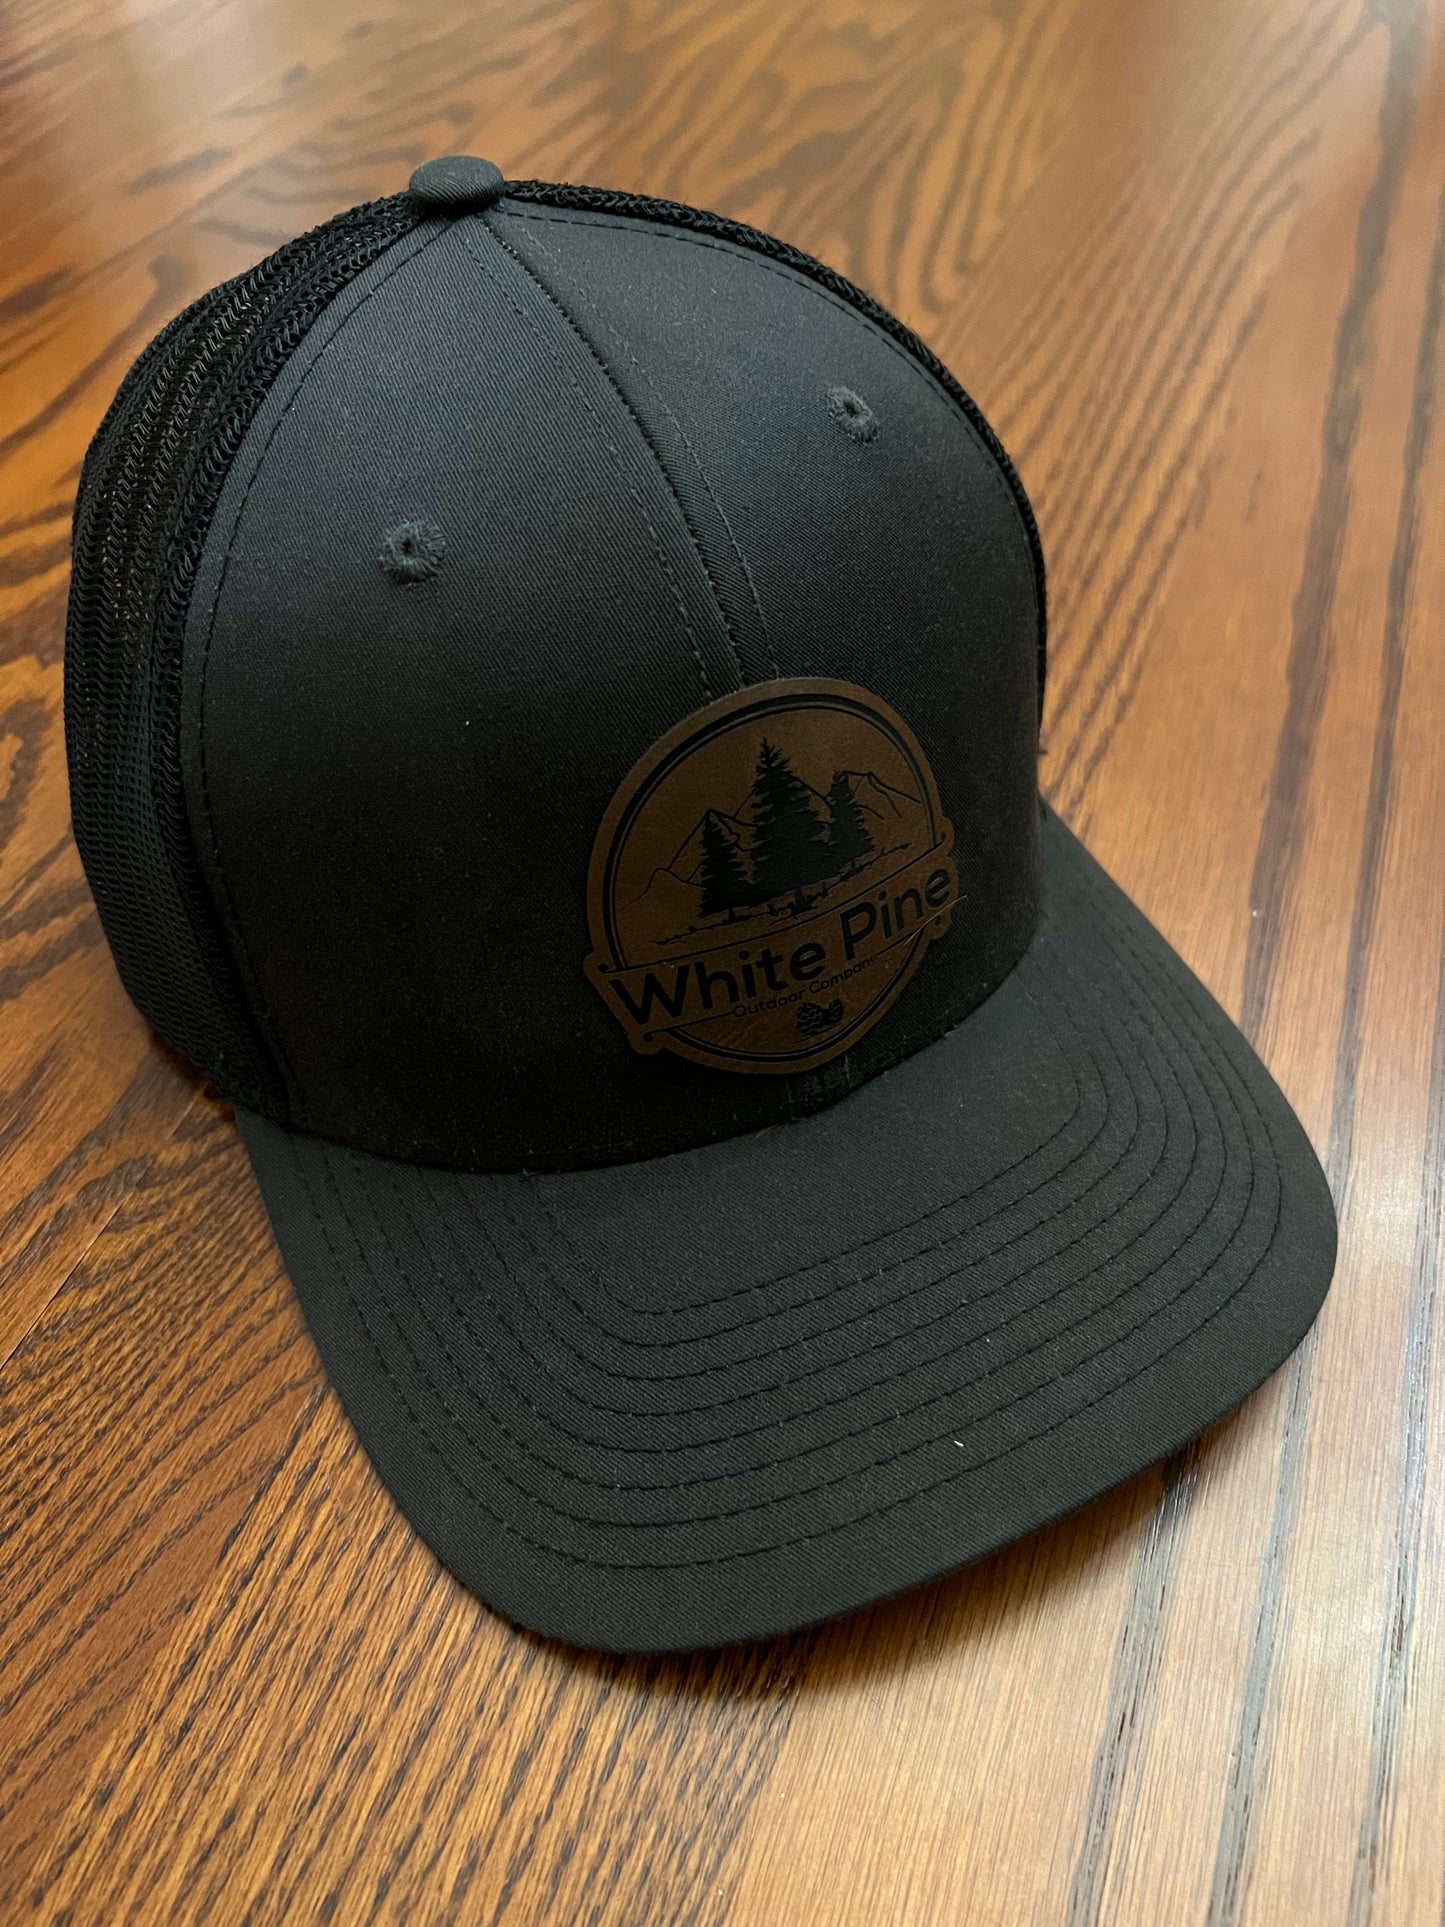 White pine hat